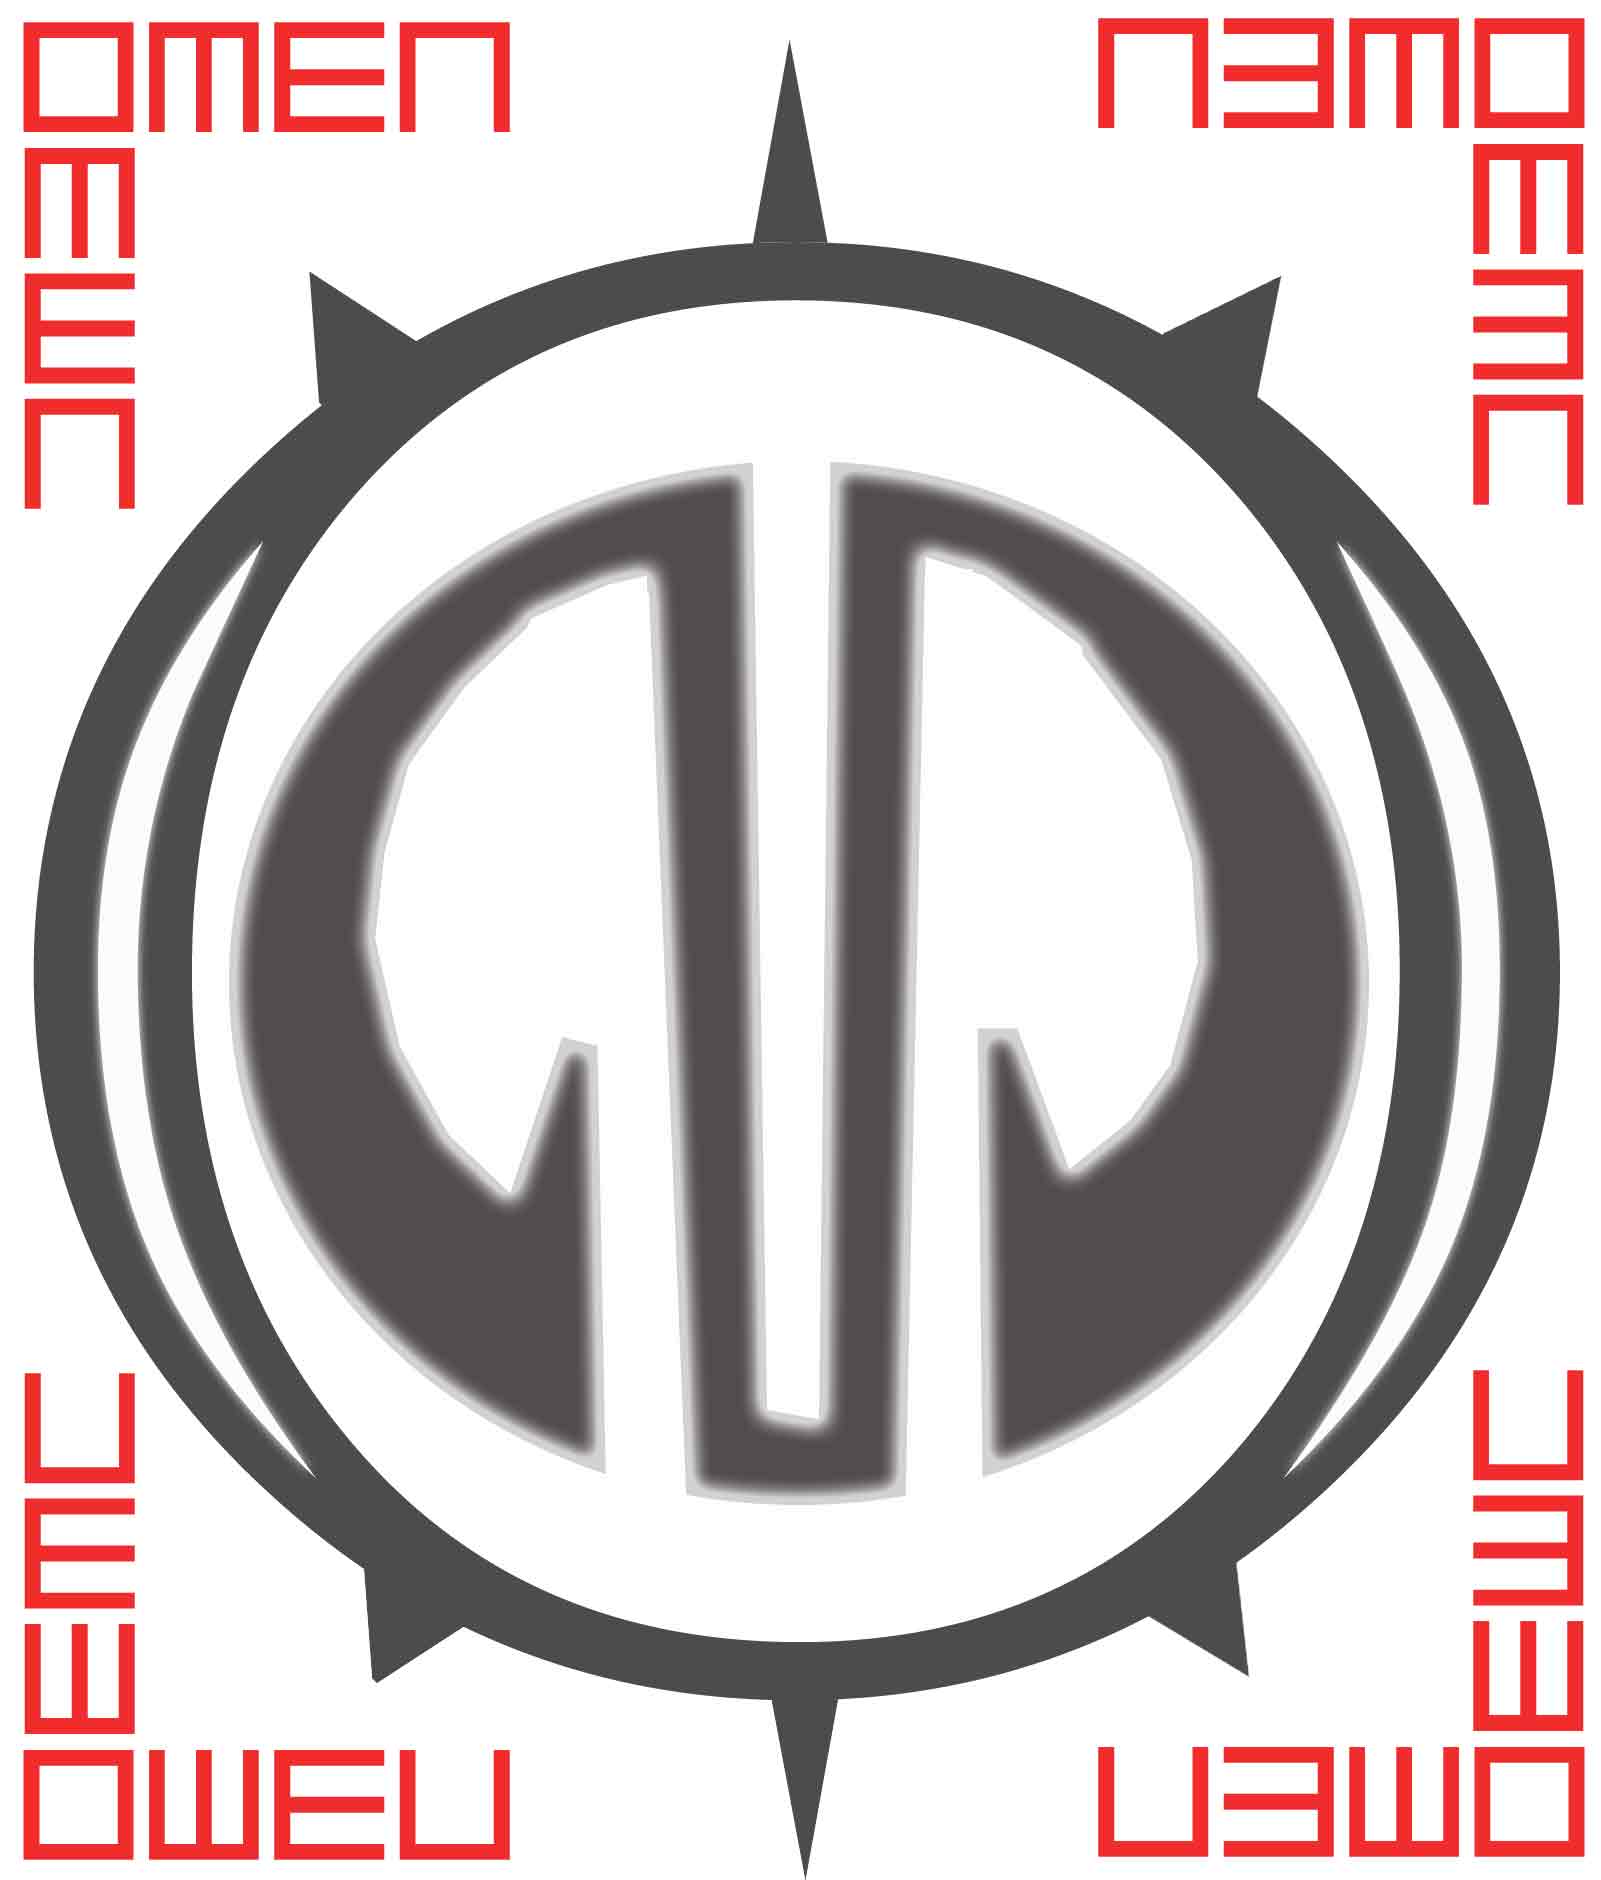 omen-logo-plain.jpg